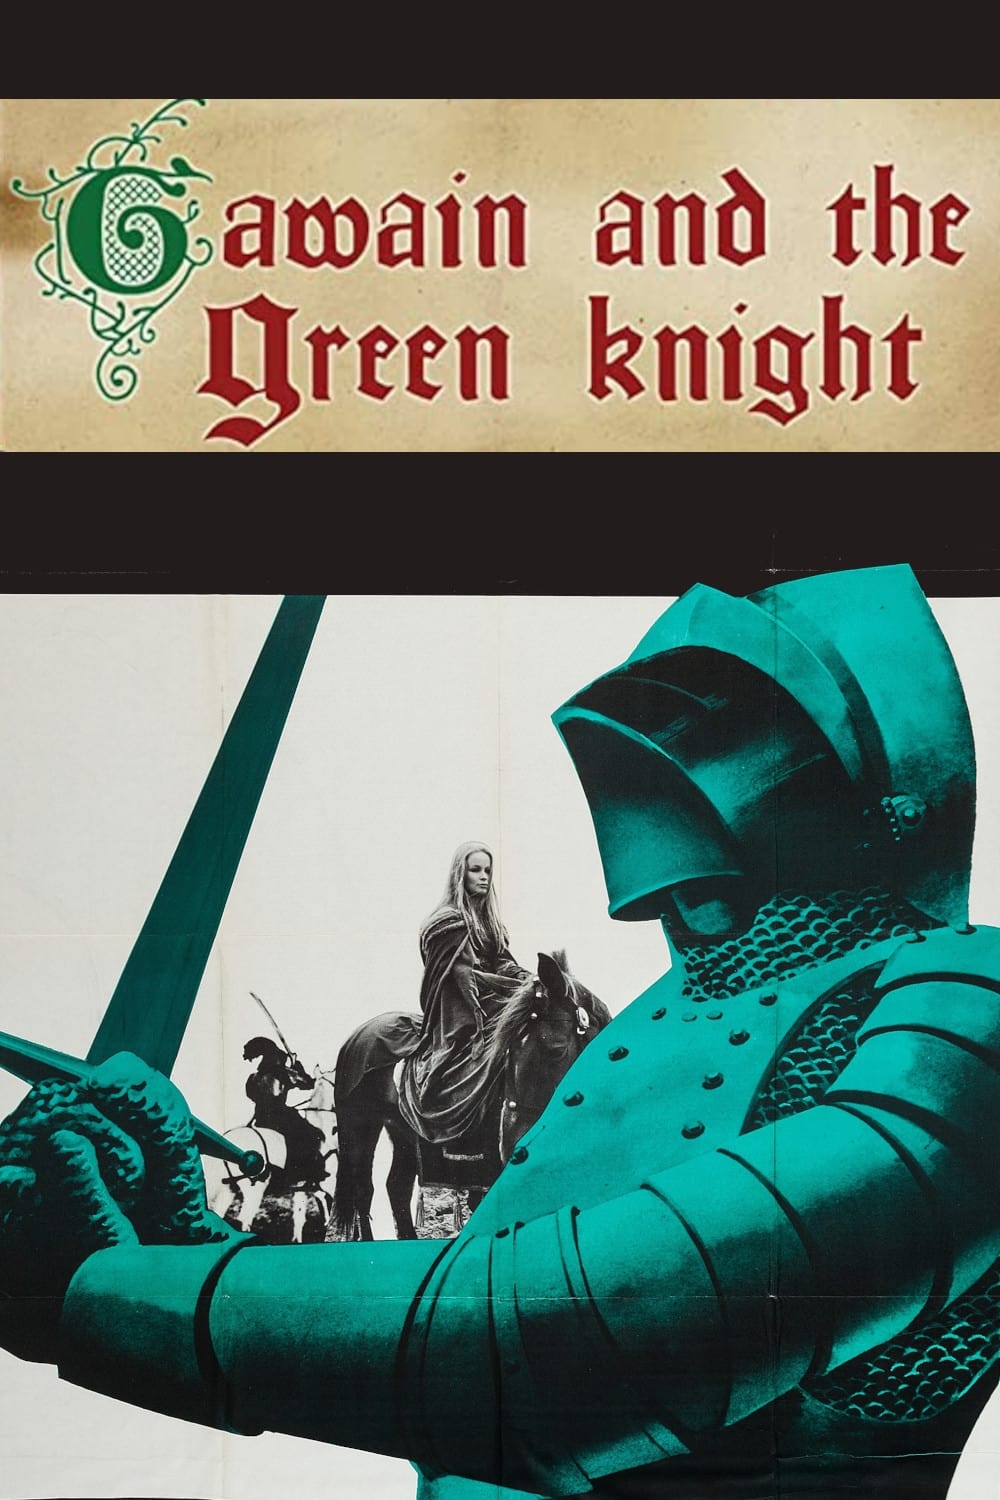 Sir Gawain und der grüne Ritter